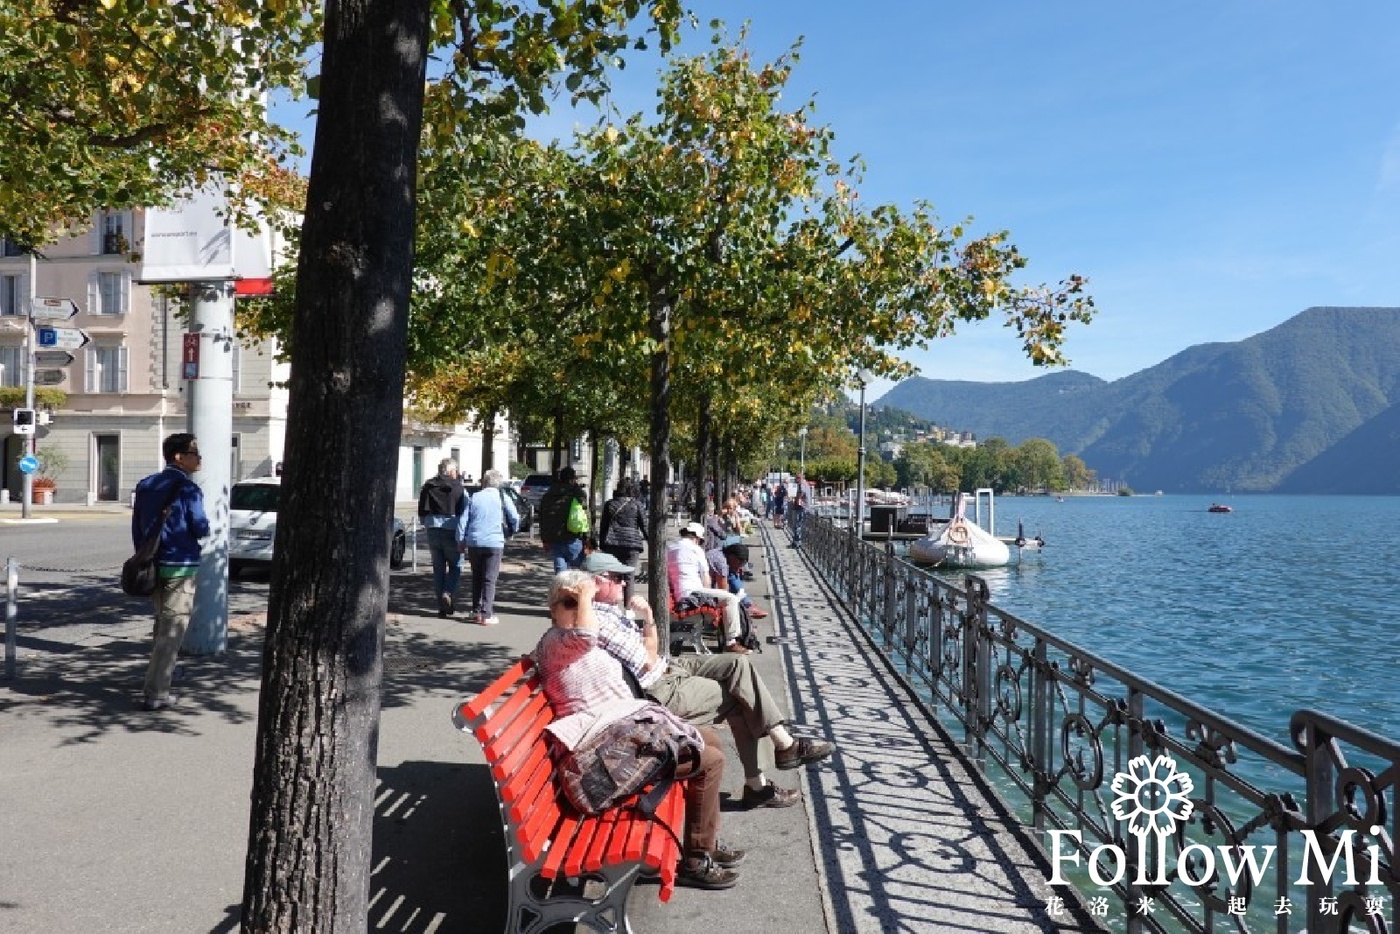 瑞士旅遊,瑞士景點,瑞士自由行,盧加諾,盧加諾湖,義式冰淇淋